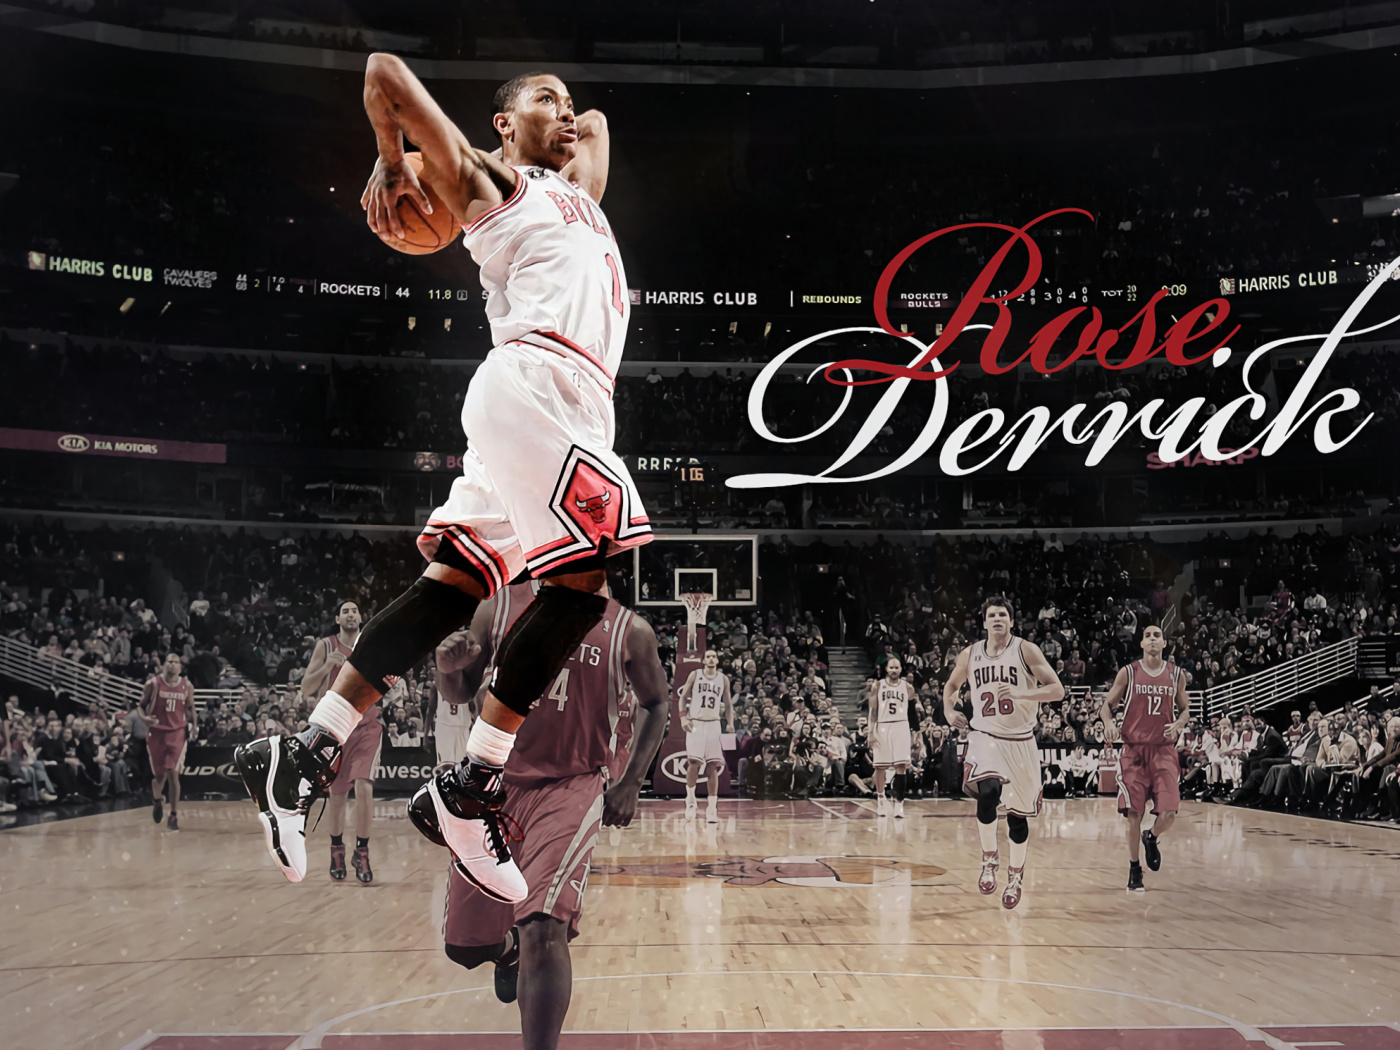 Das Derrick Rose NBA Star Wallpaper 1400x1050